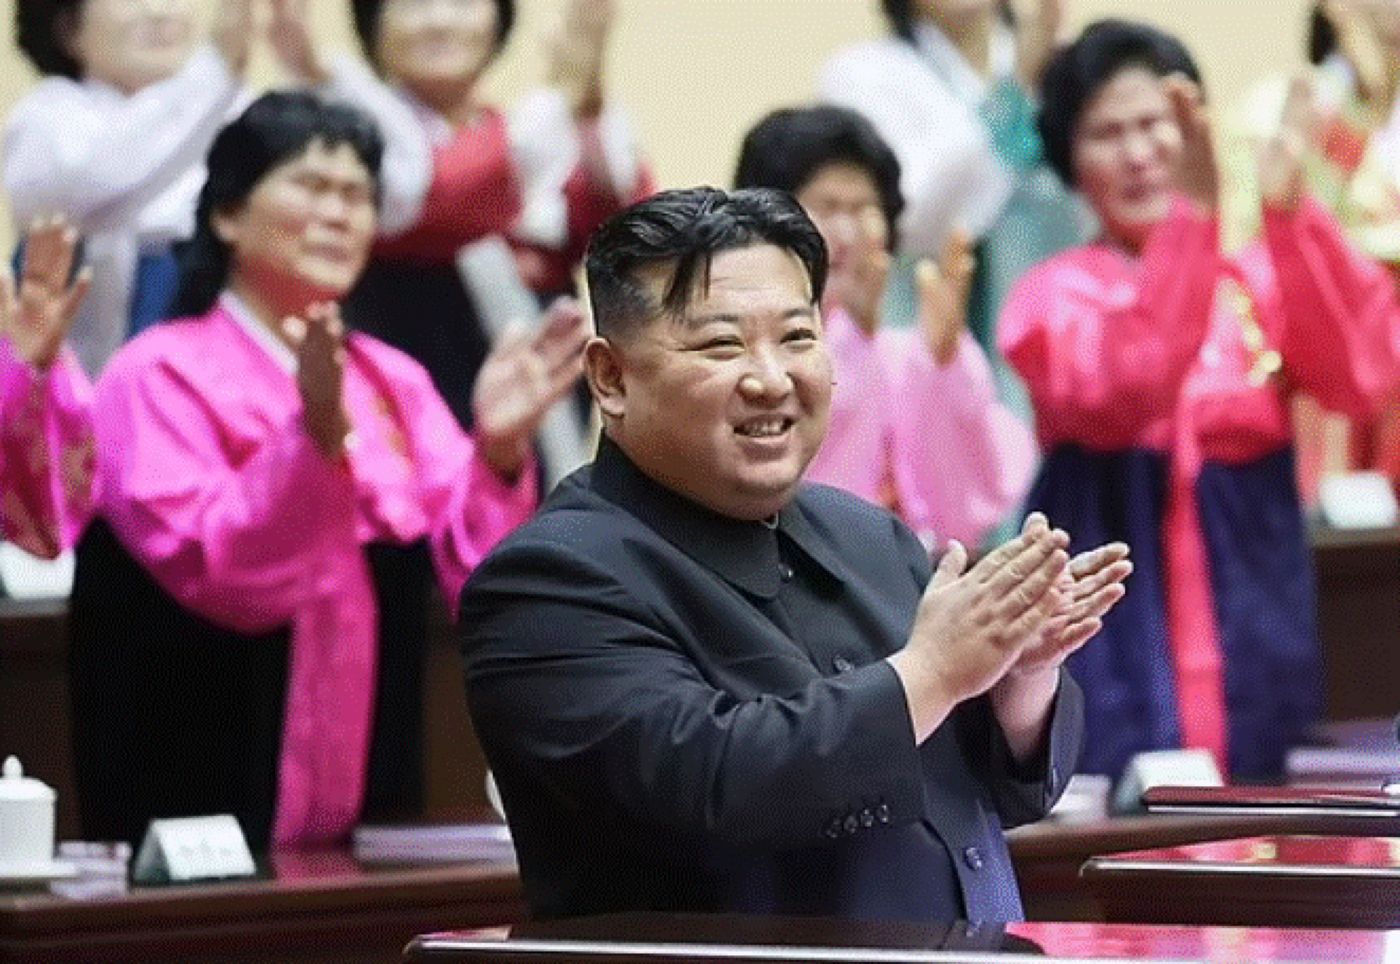 Draconicul Kim Jong Un a început să plângă în timpul discursului. Imagini uluitoare